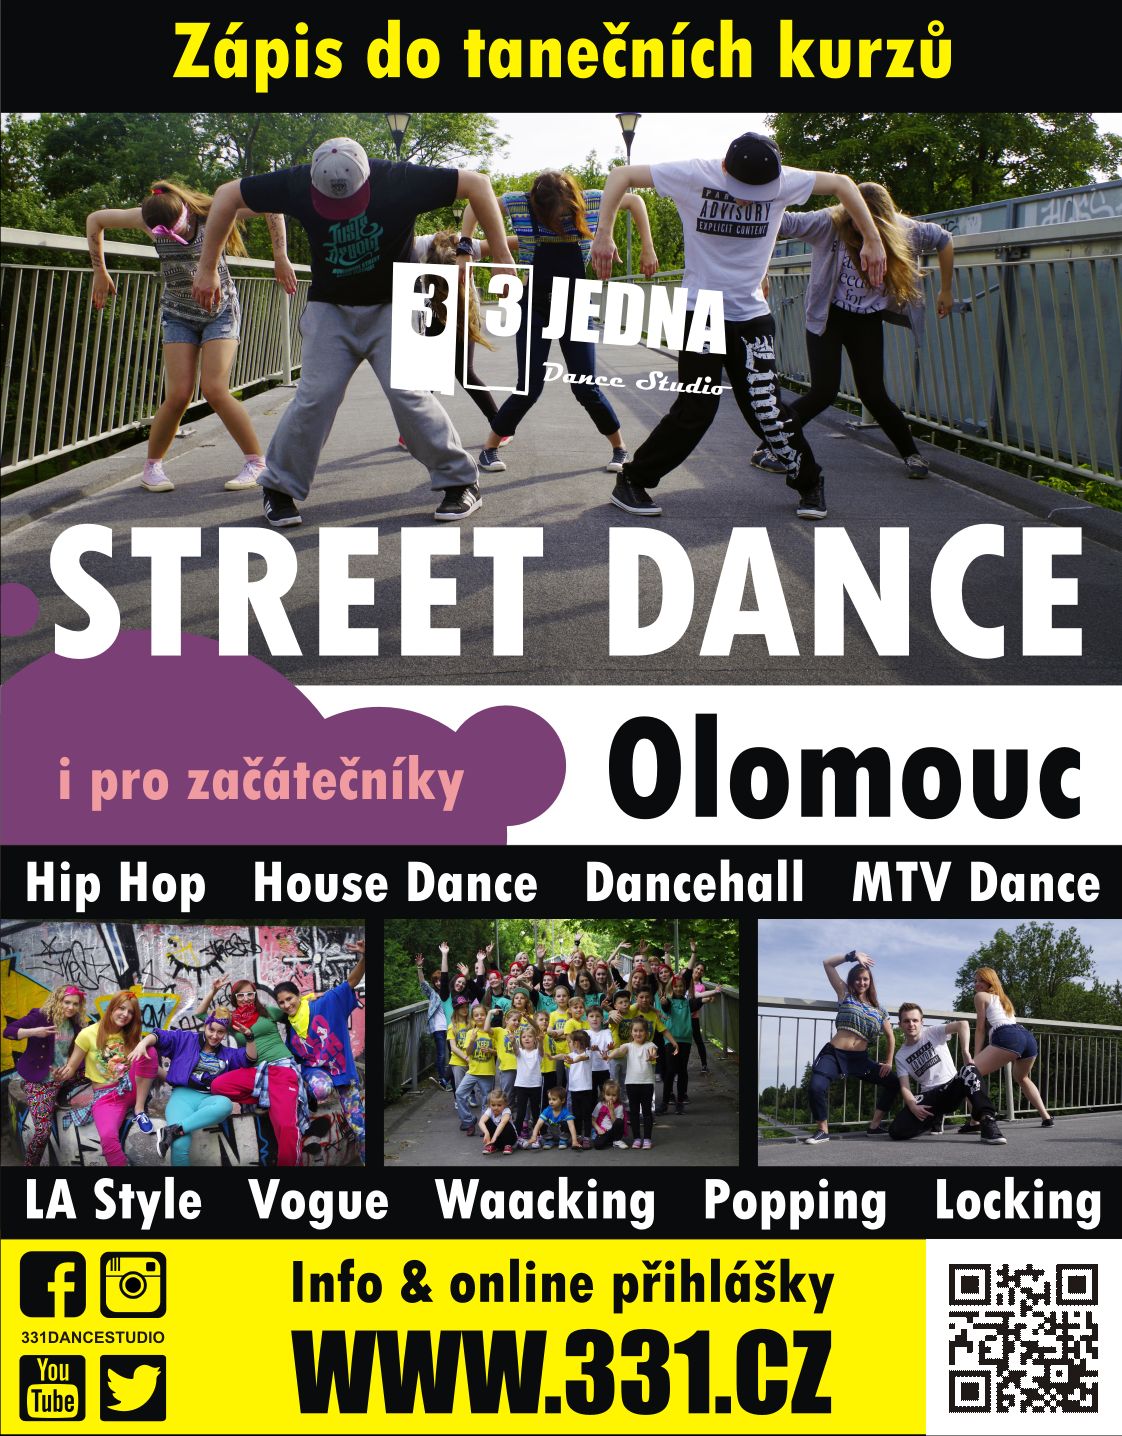 Taneční kurzy street dance v Olomouci 2015/2016  -Olomouc